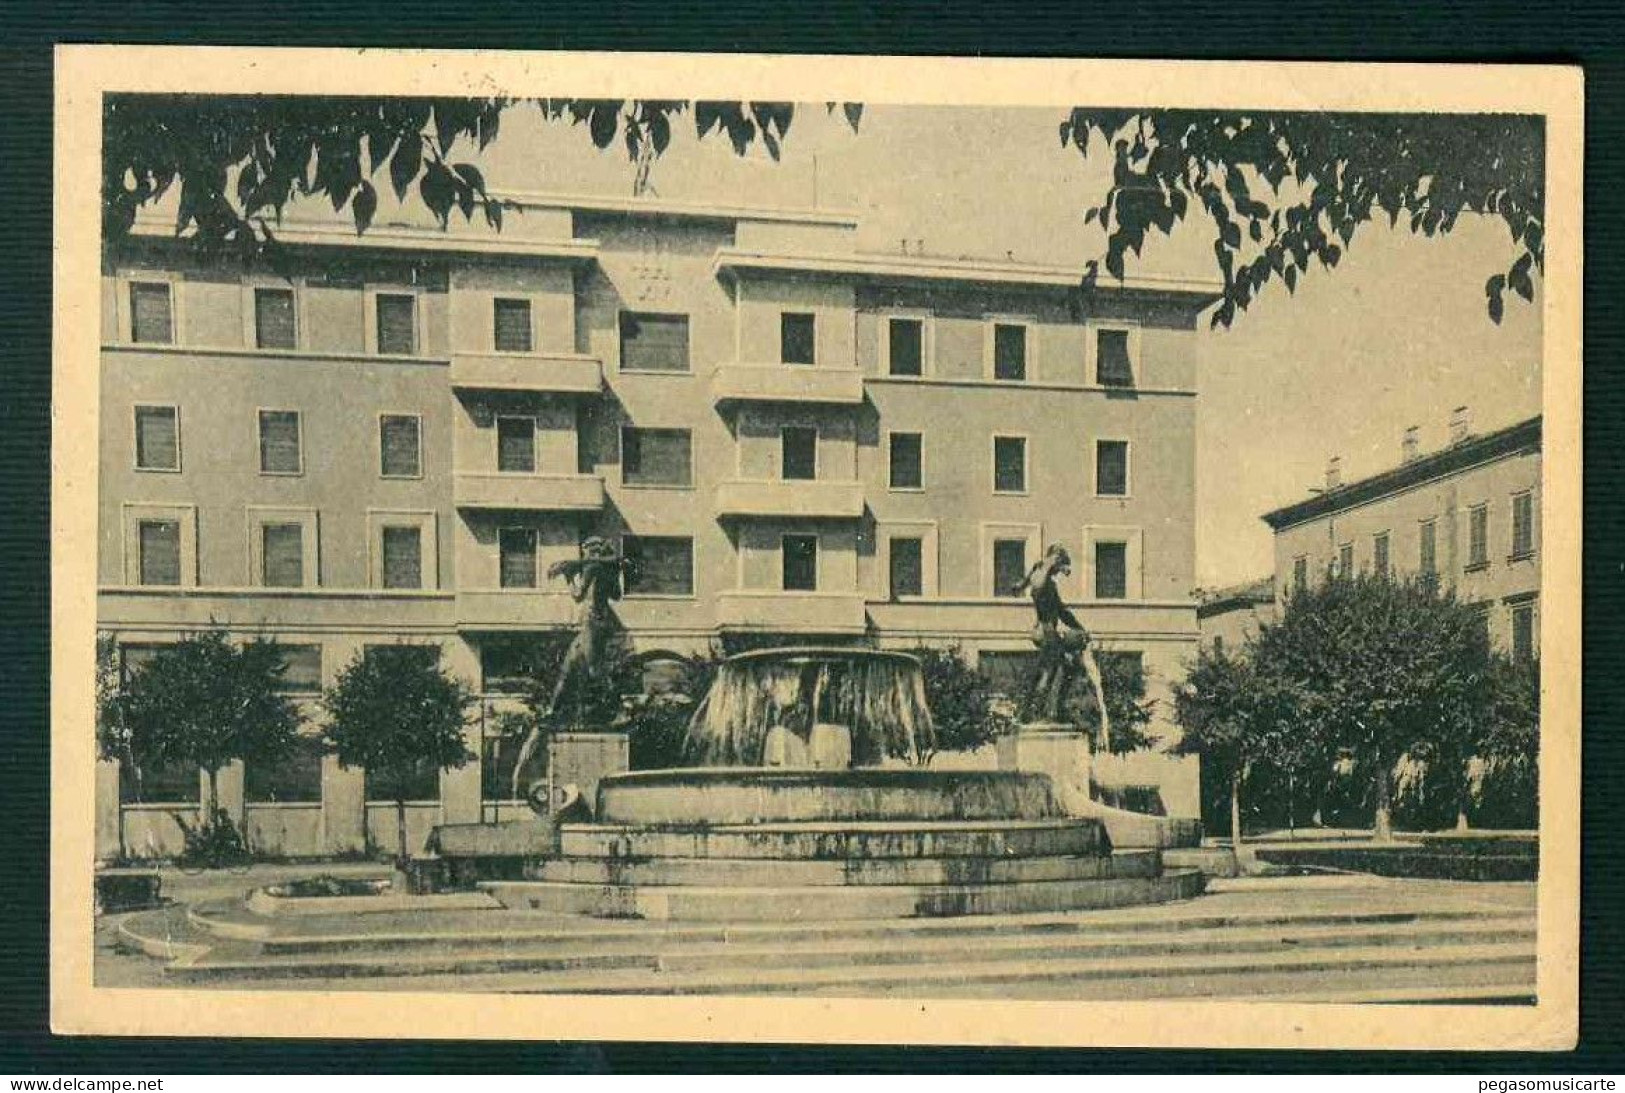 BF131 MODENA LARGO GARIBALDI - FONTANA MONUMENTALE DEL GRAZIOSI "I DUE FIUMI" E ALBERGO REALE 1947 - Modena